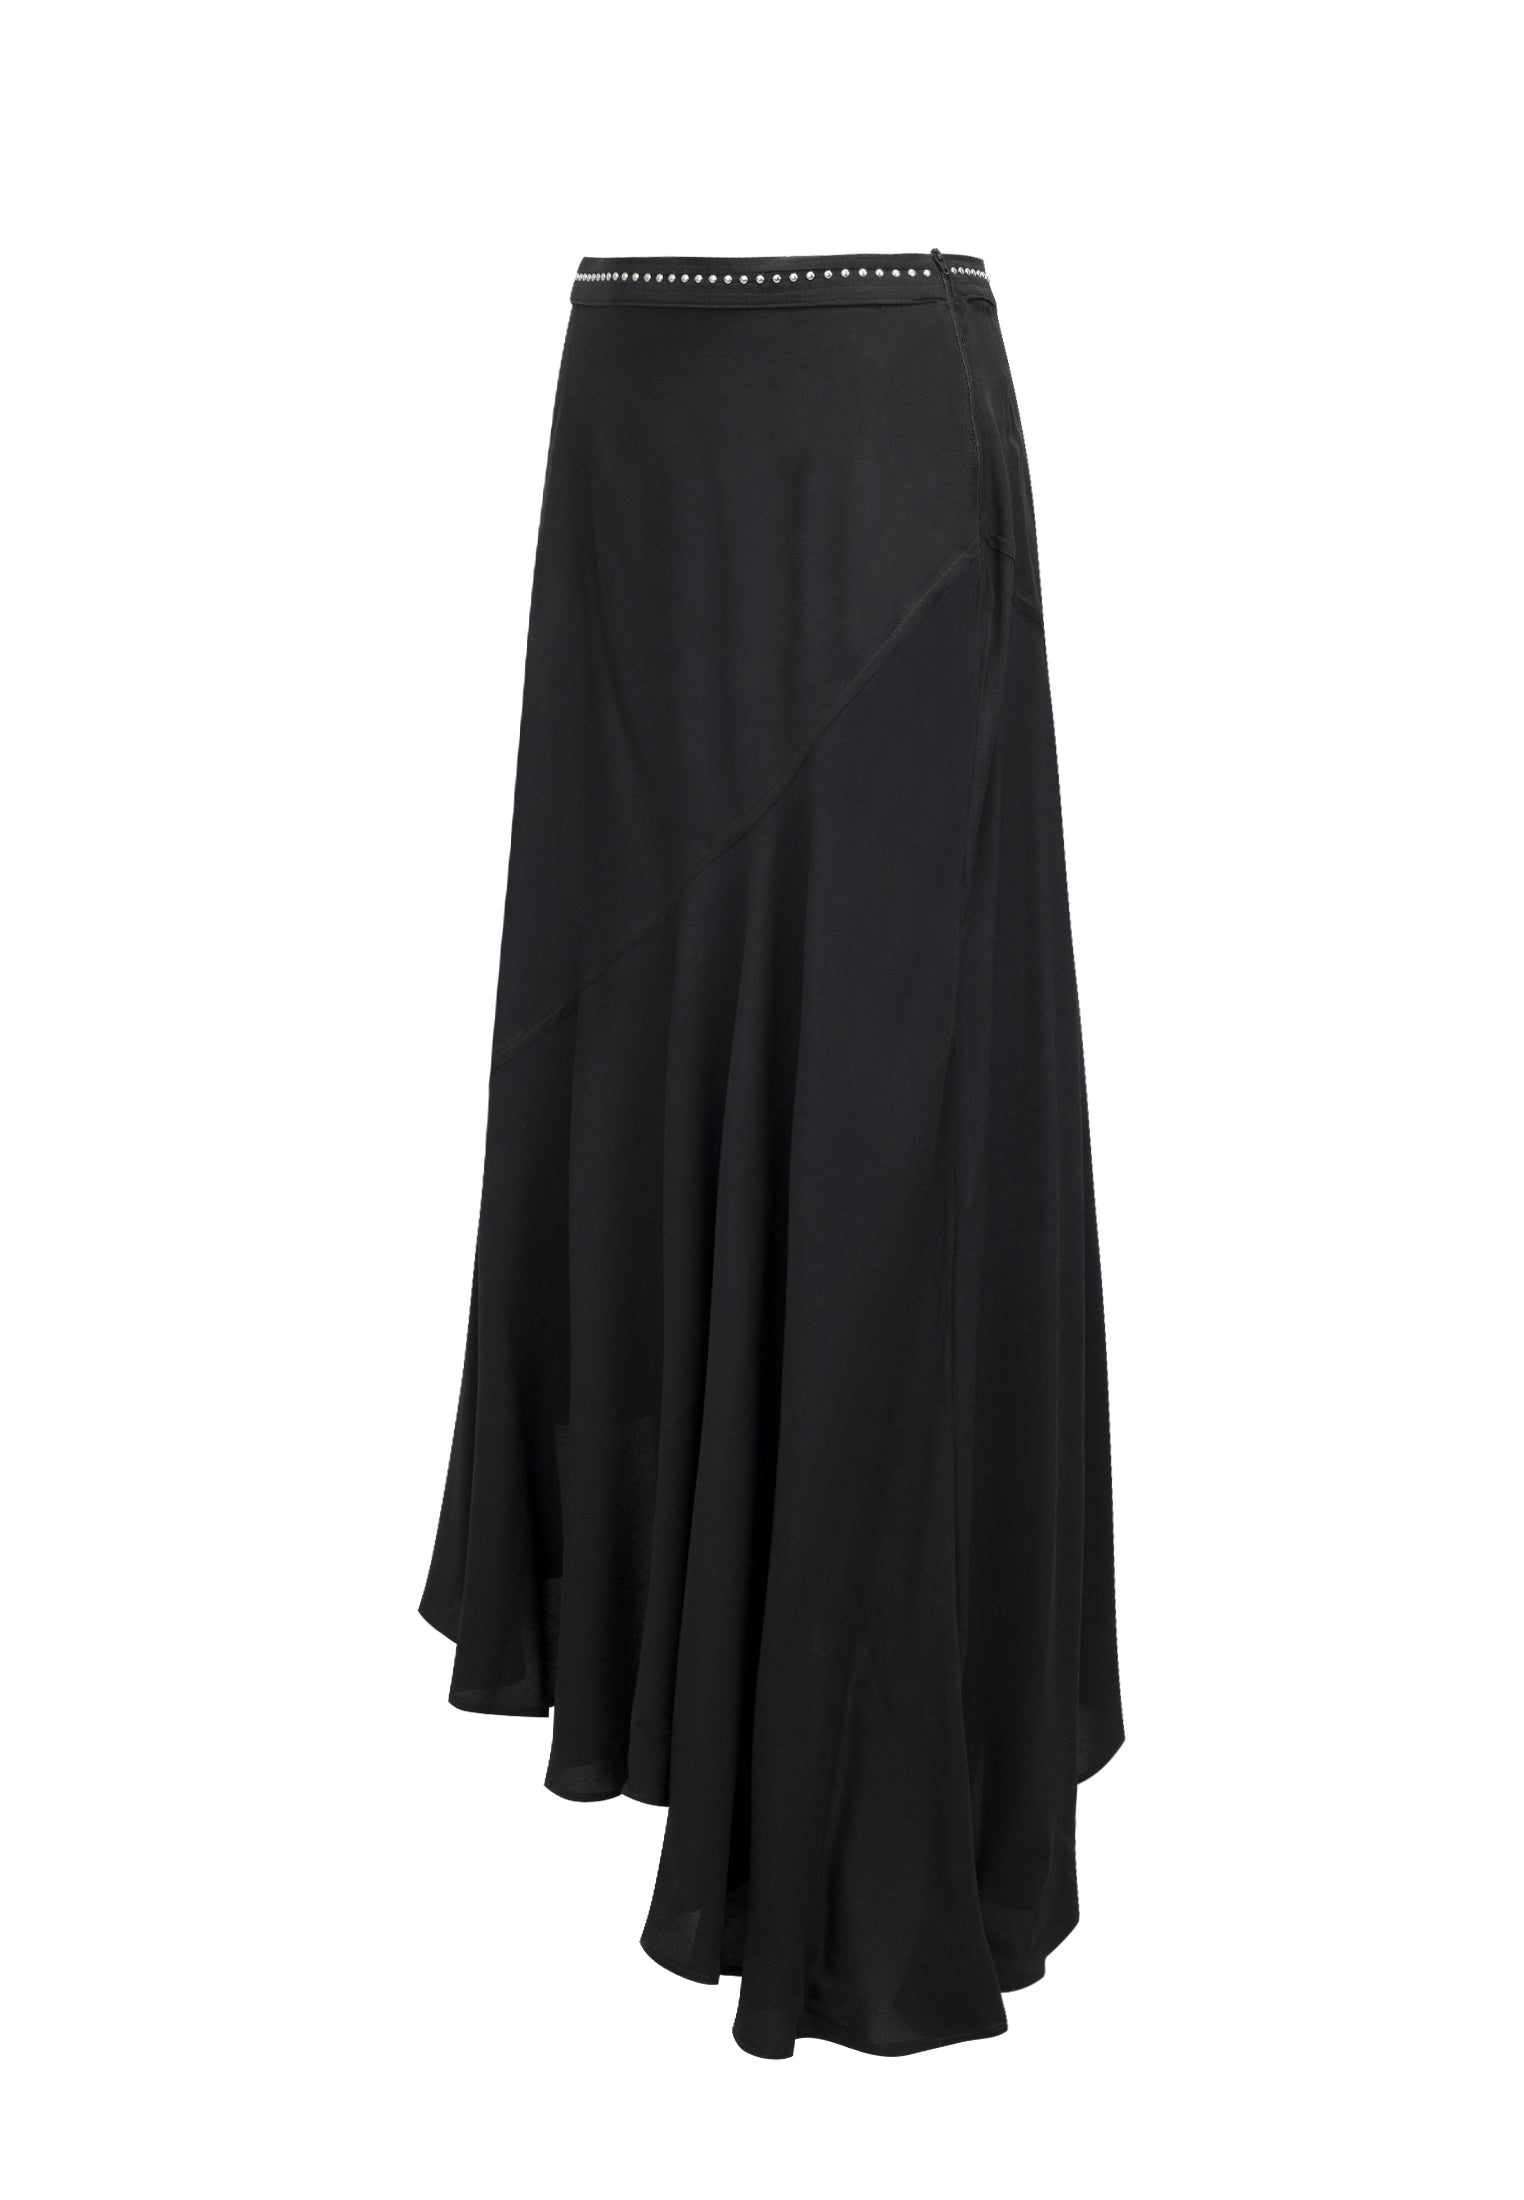 RELIGION Precious Black Maxi Skirt